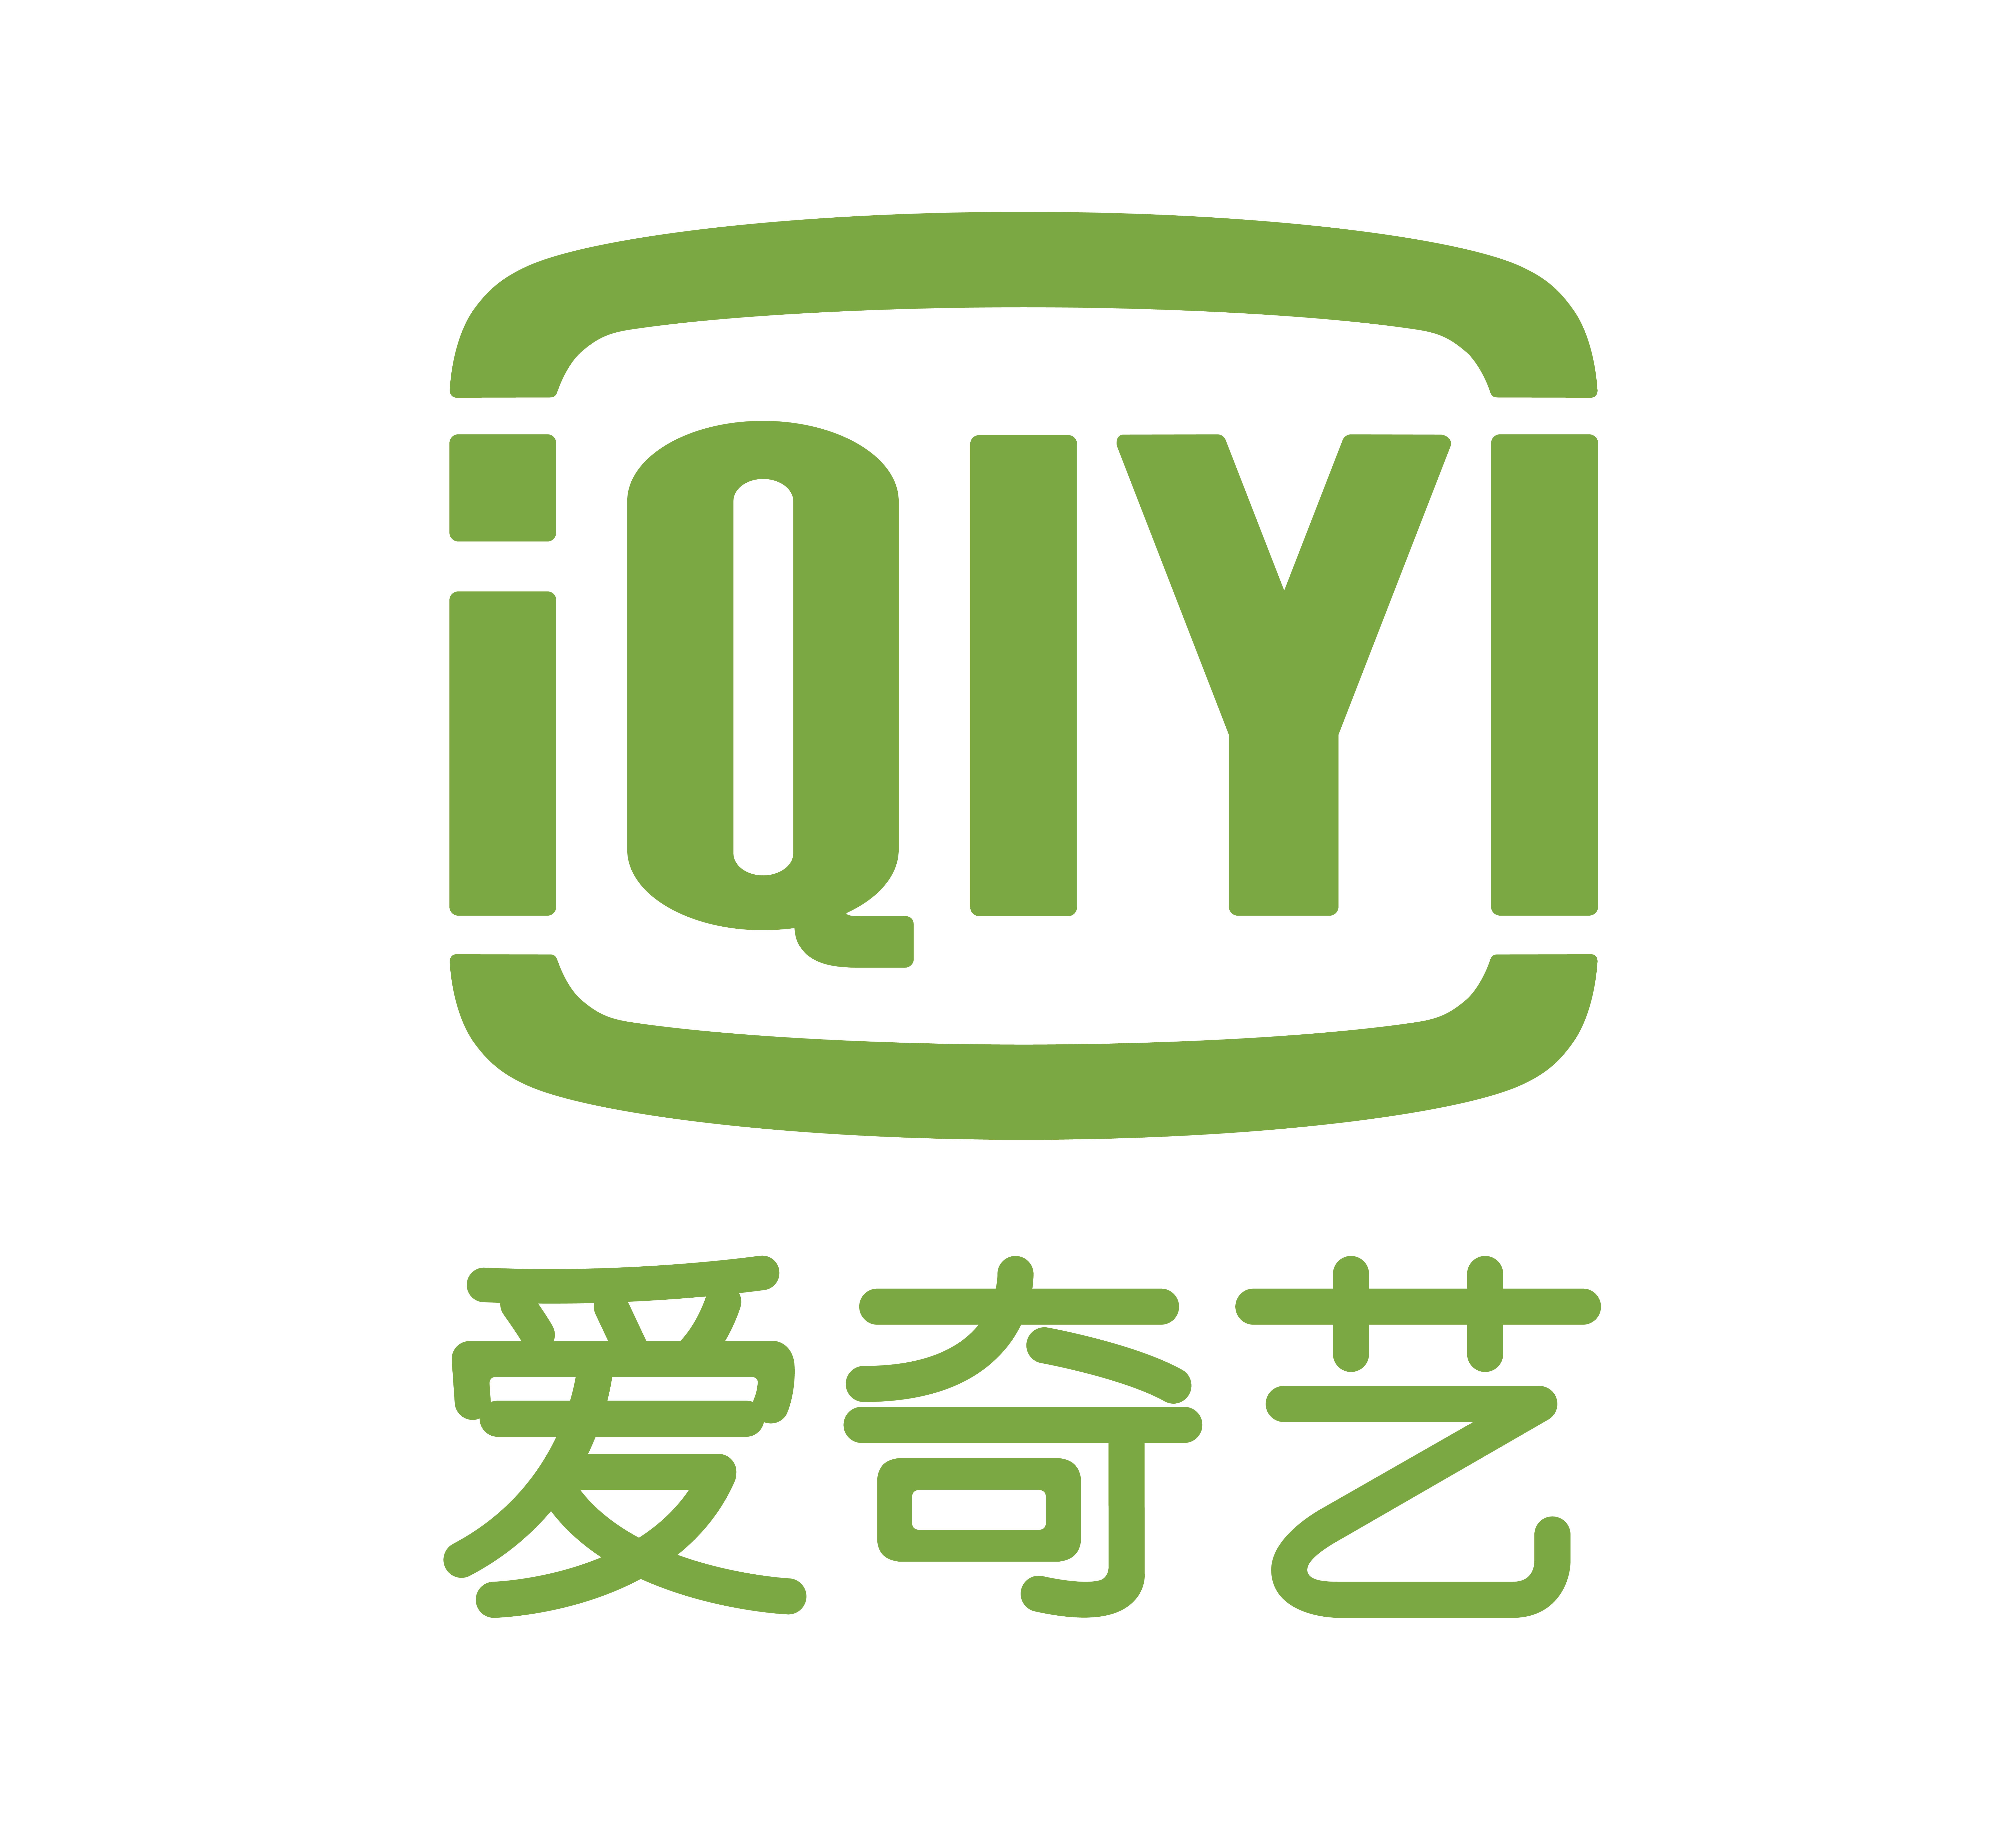 爱奇艺logo 原版图片